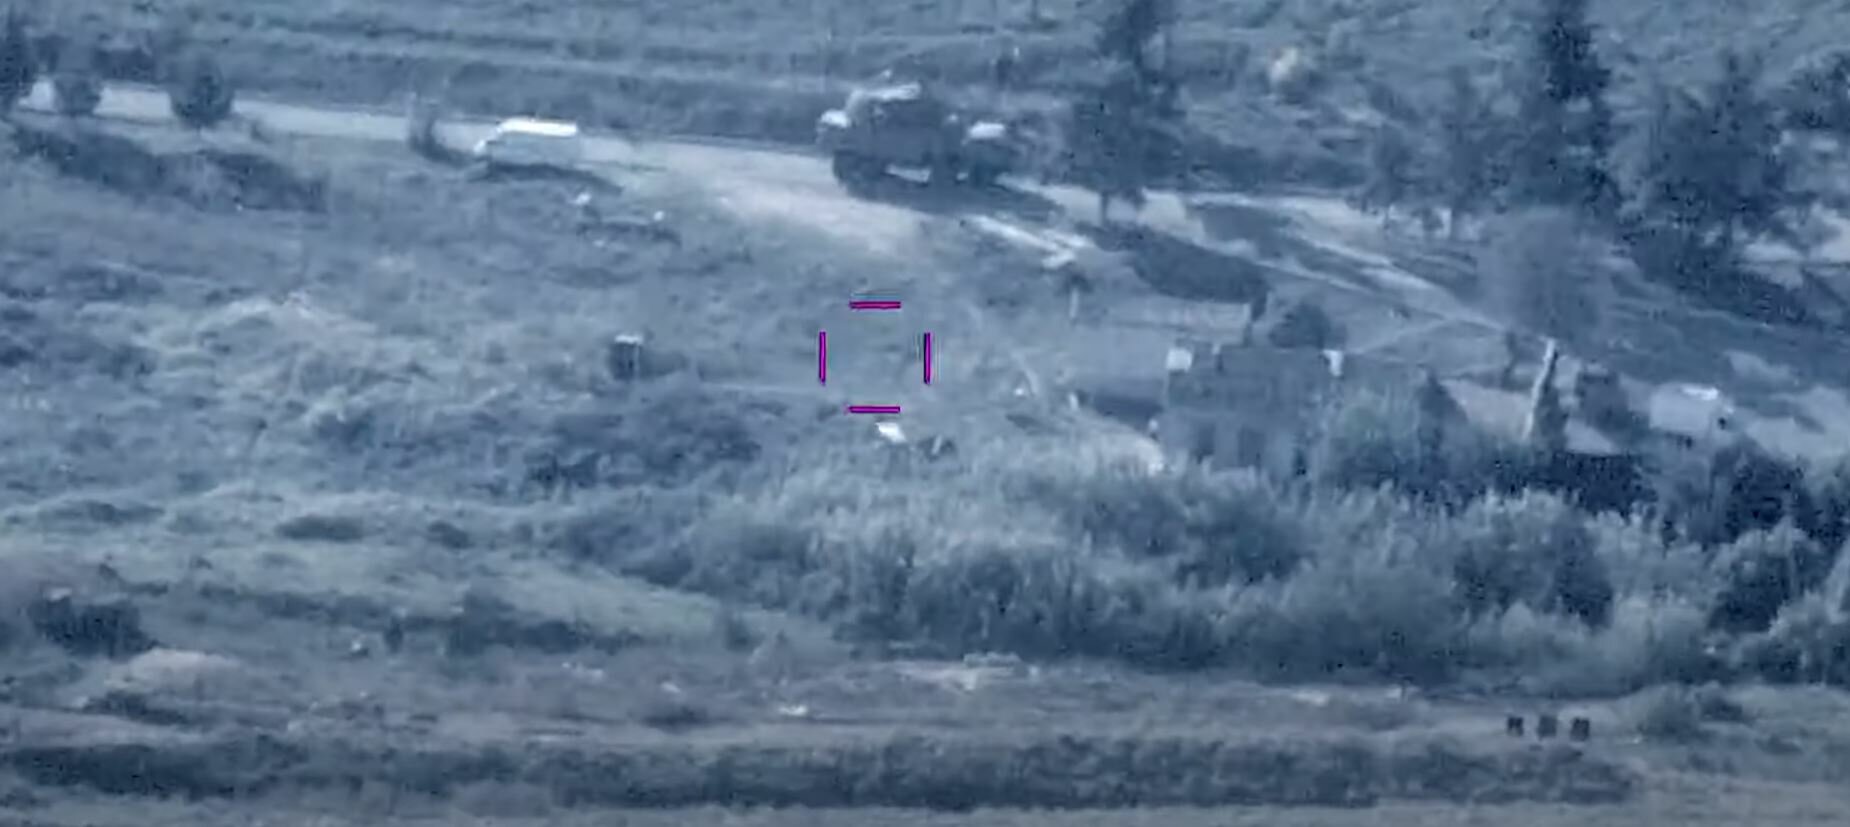 Азербайджан показал кадры уничтожения ЗРК "Тор" и "Осы" в Ходжавендском районе